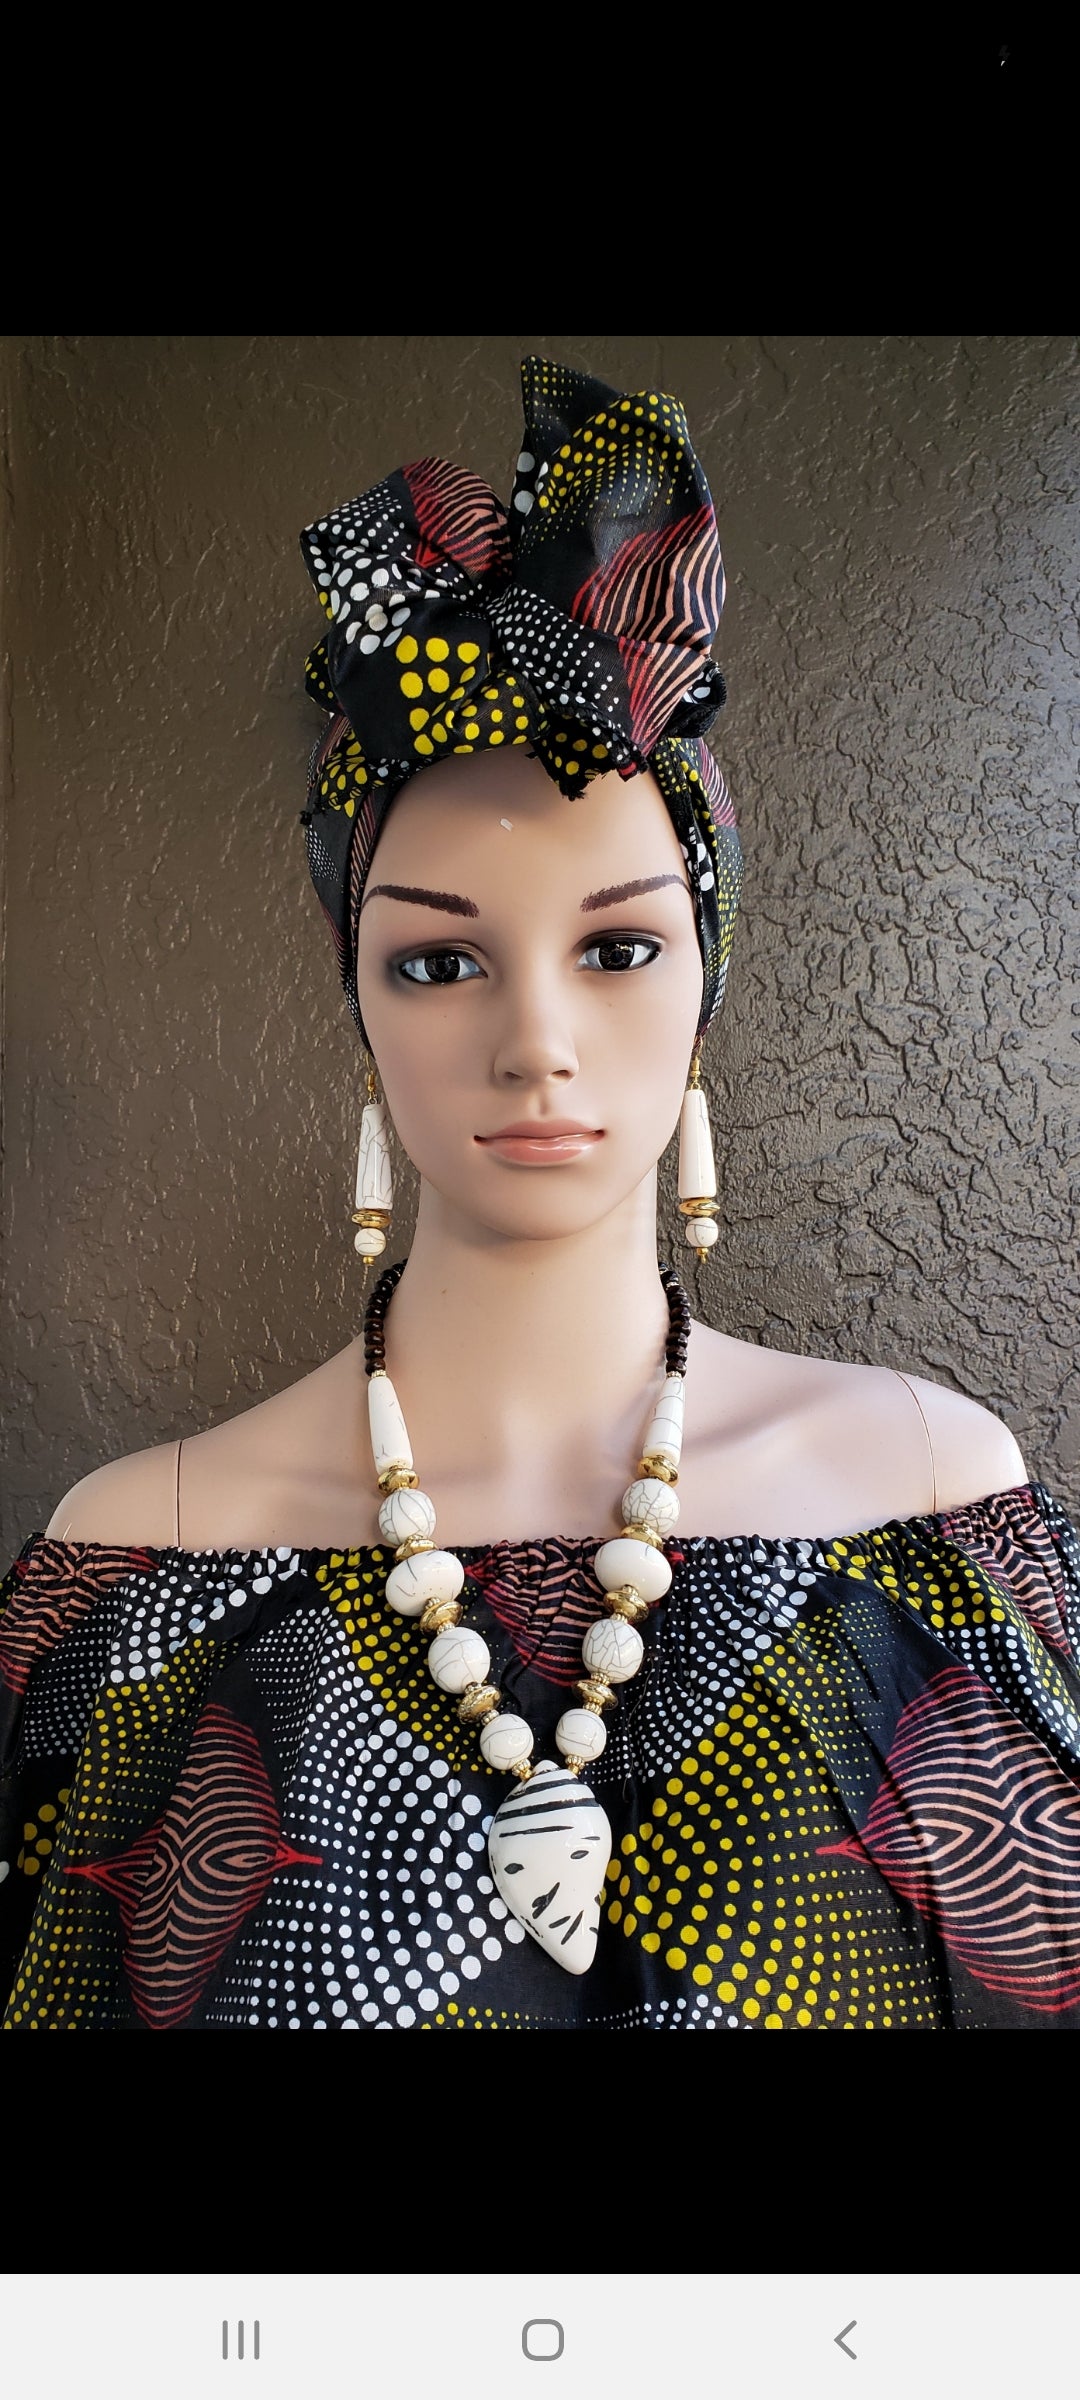 Shell Pendant Necklace & Earrings Set